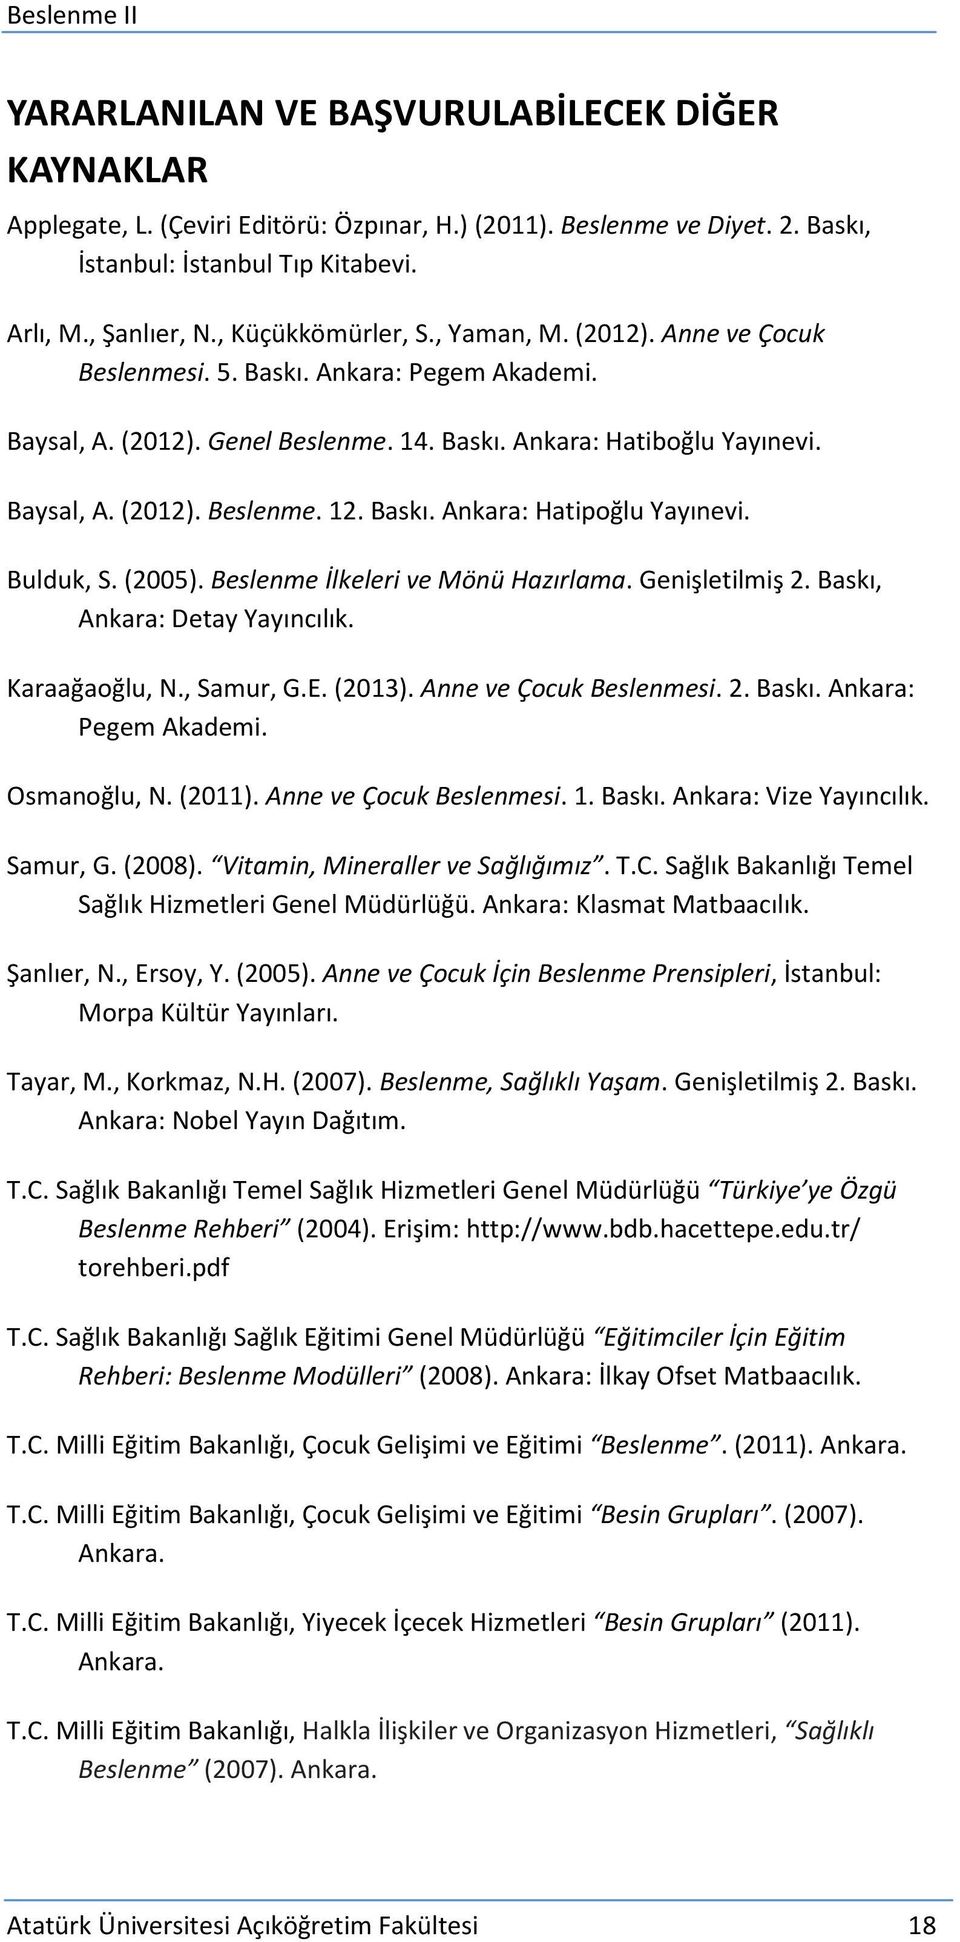 Baskı. Ankara: Hatipoğlu Yayınevi. Bulduk, S. (2005). Beslenme İlkeleri ve Mönü Hazırlama. Genişletilmiş 2. Baskı, Ankara: Detay Yayıncılık. Karaağaoğlu, N., Samur, G.E. (2013).